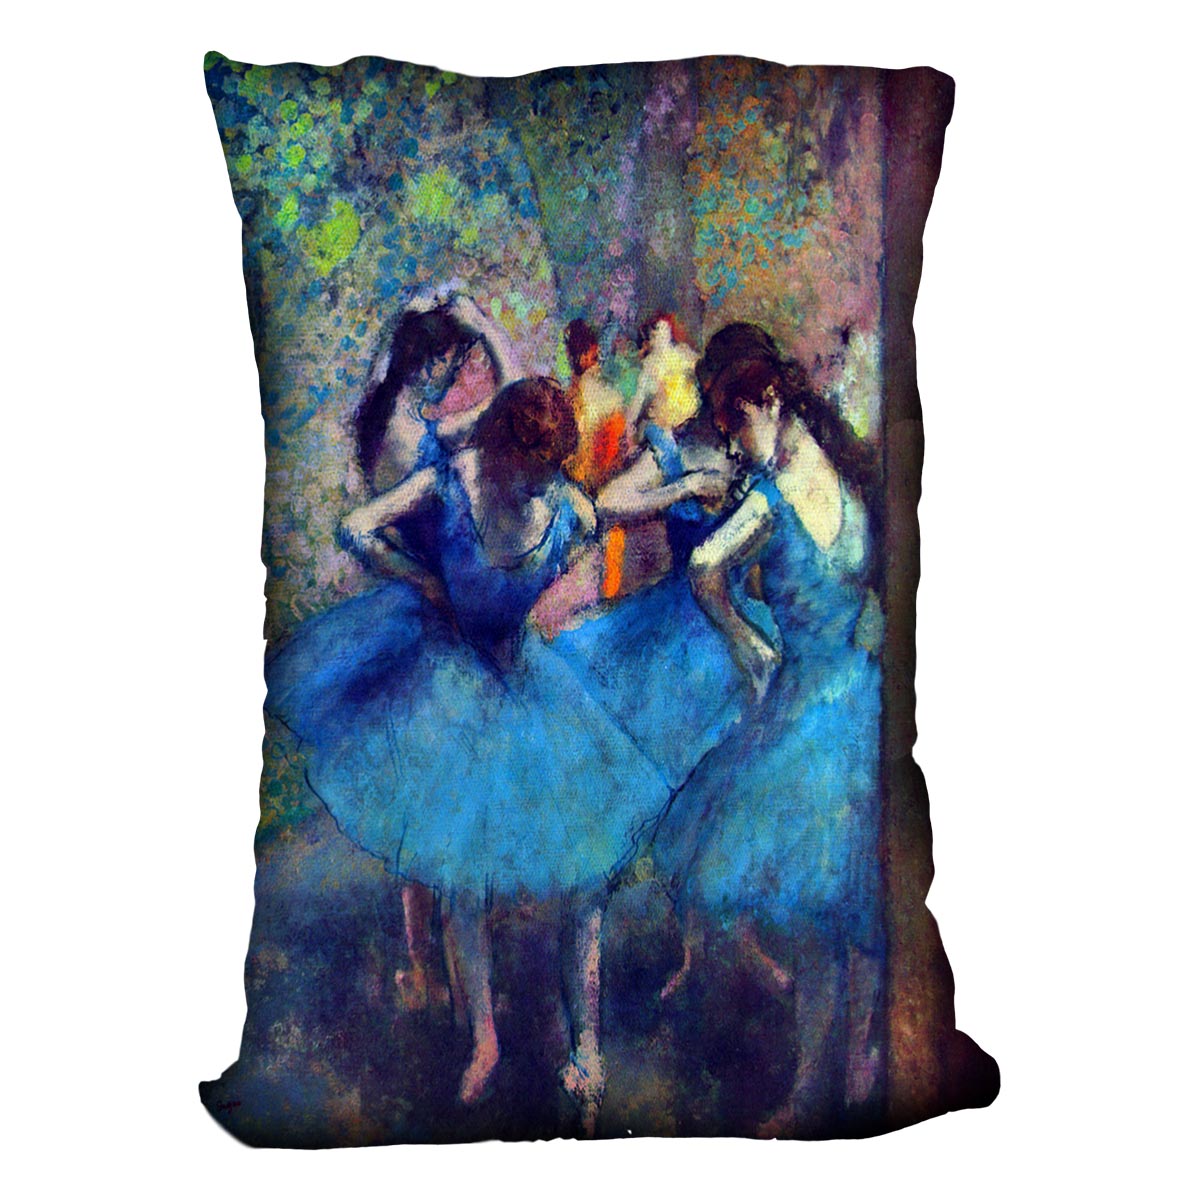 Dancers 1 by Degas Cushion